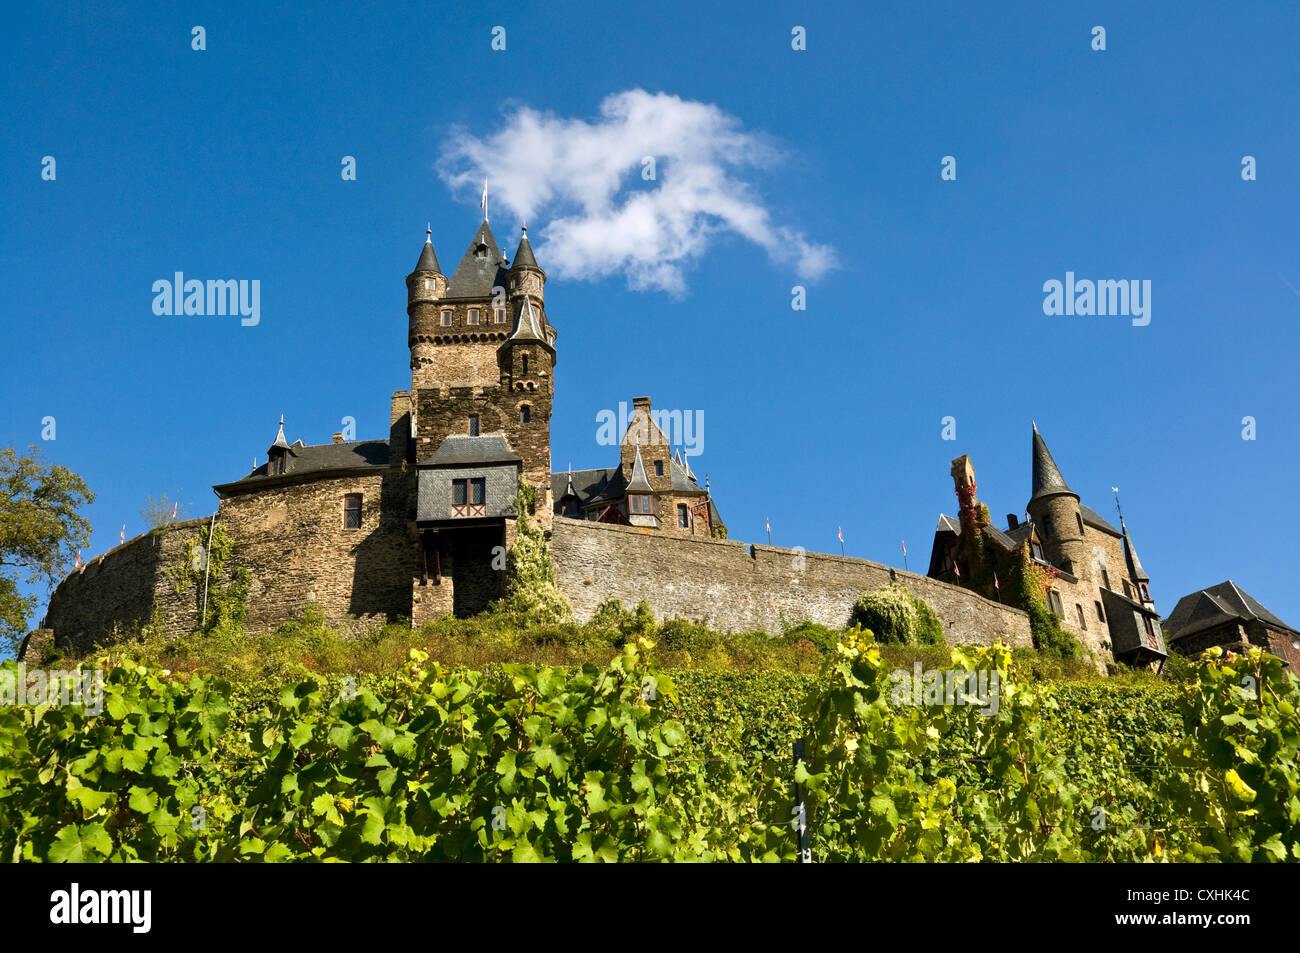 Le château de Cochem, vallée de la Moselle, en Allemagne. Banque D'Images